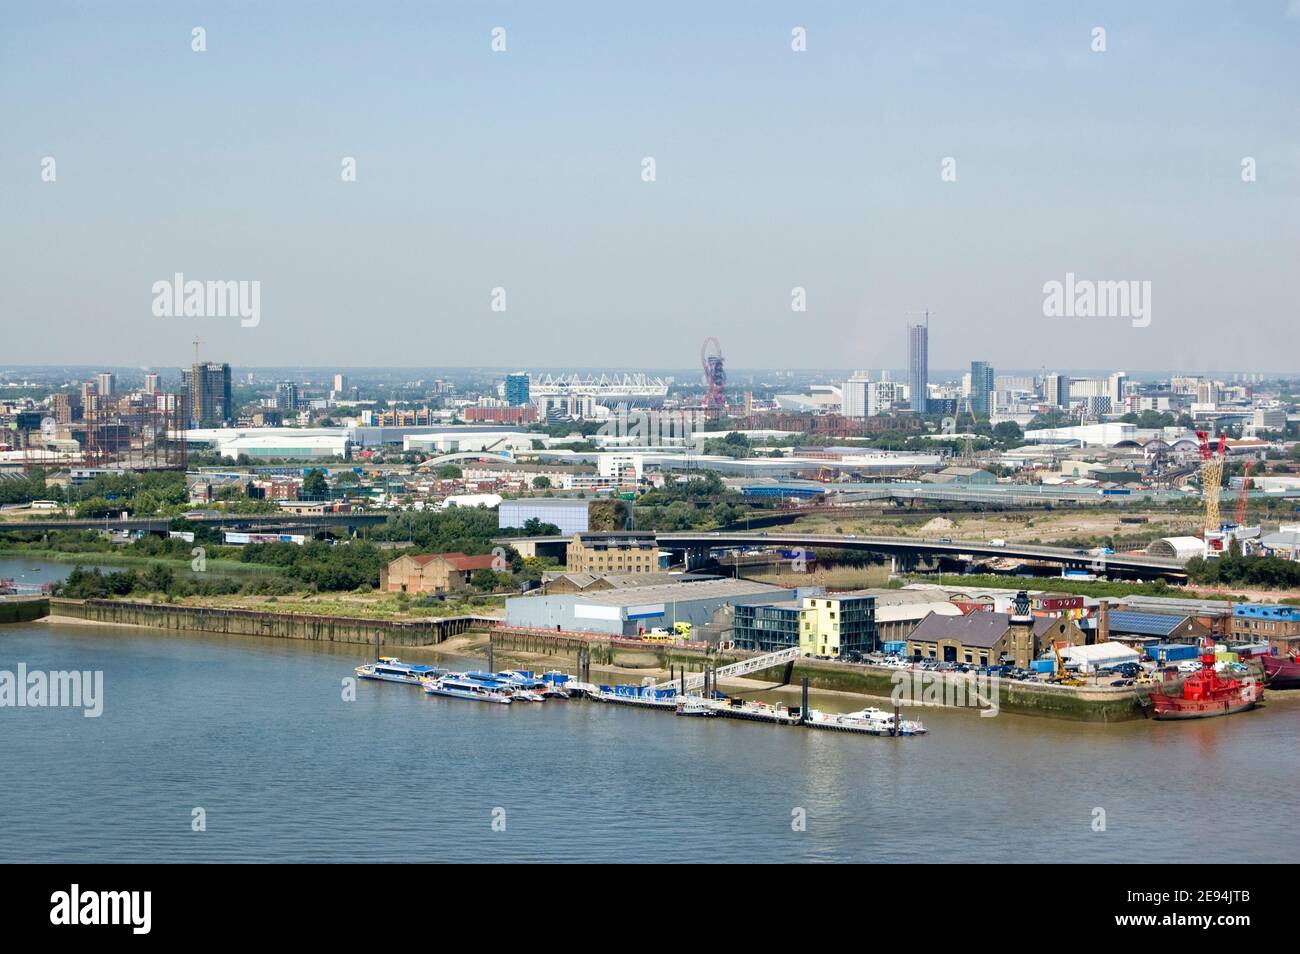 Vue aérienne de Newham, est de Londres. Avec Trinity Buoy Wharf à l'avant et le stade à Stratford à l'arrière. Banque D'Images